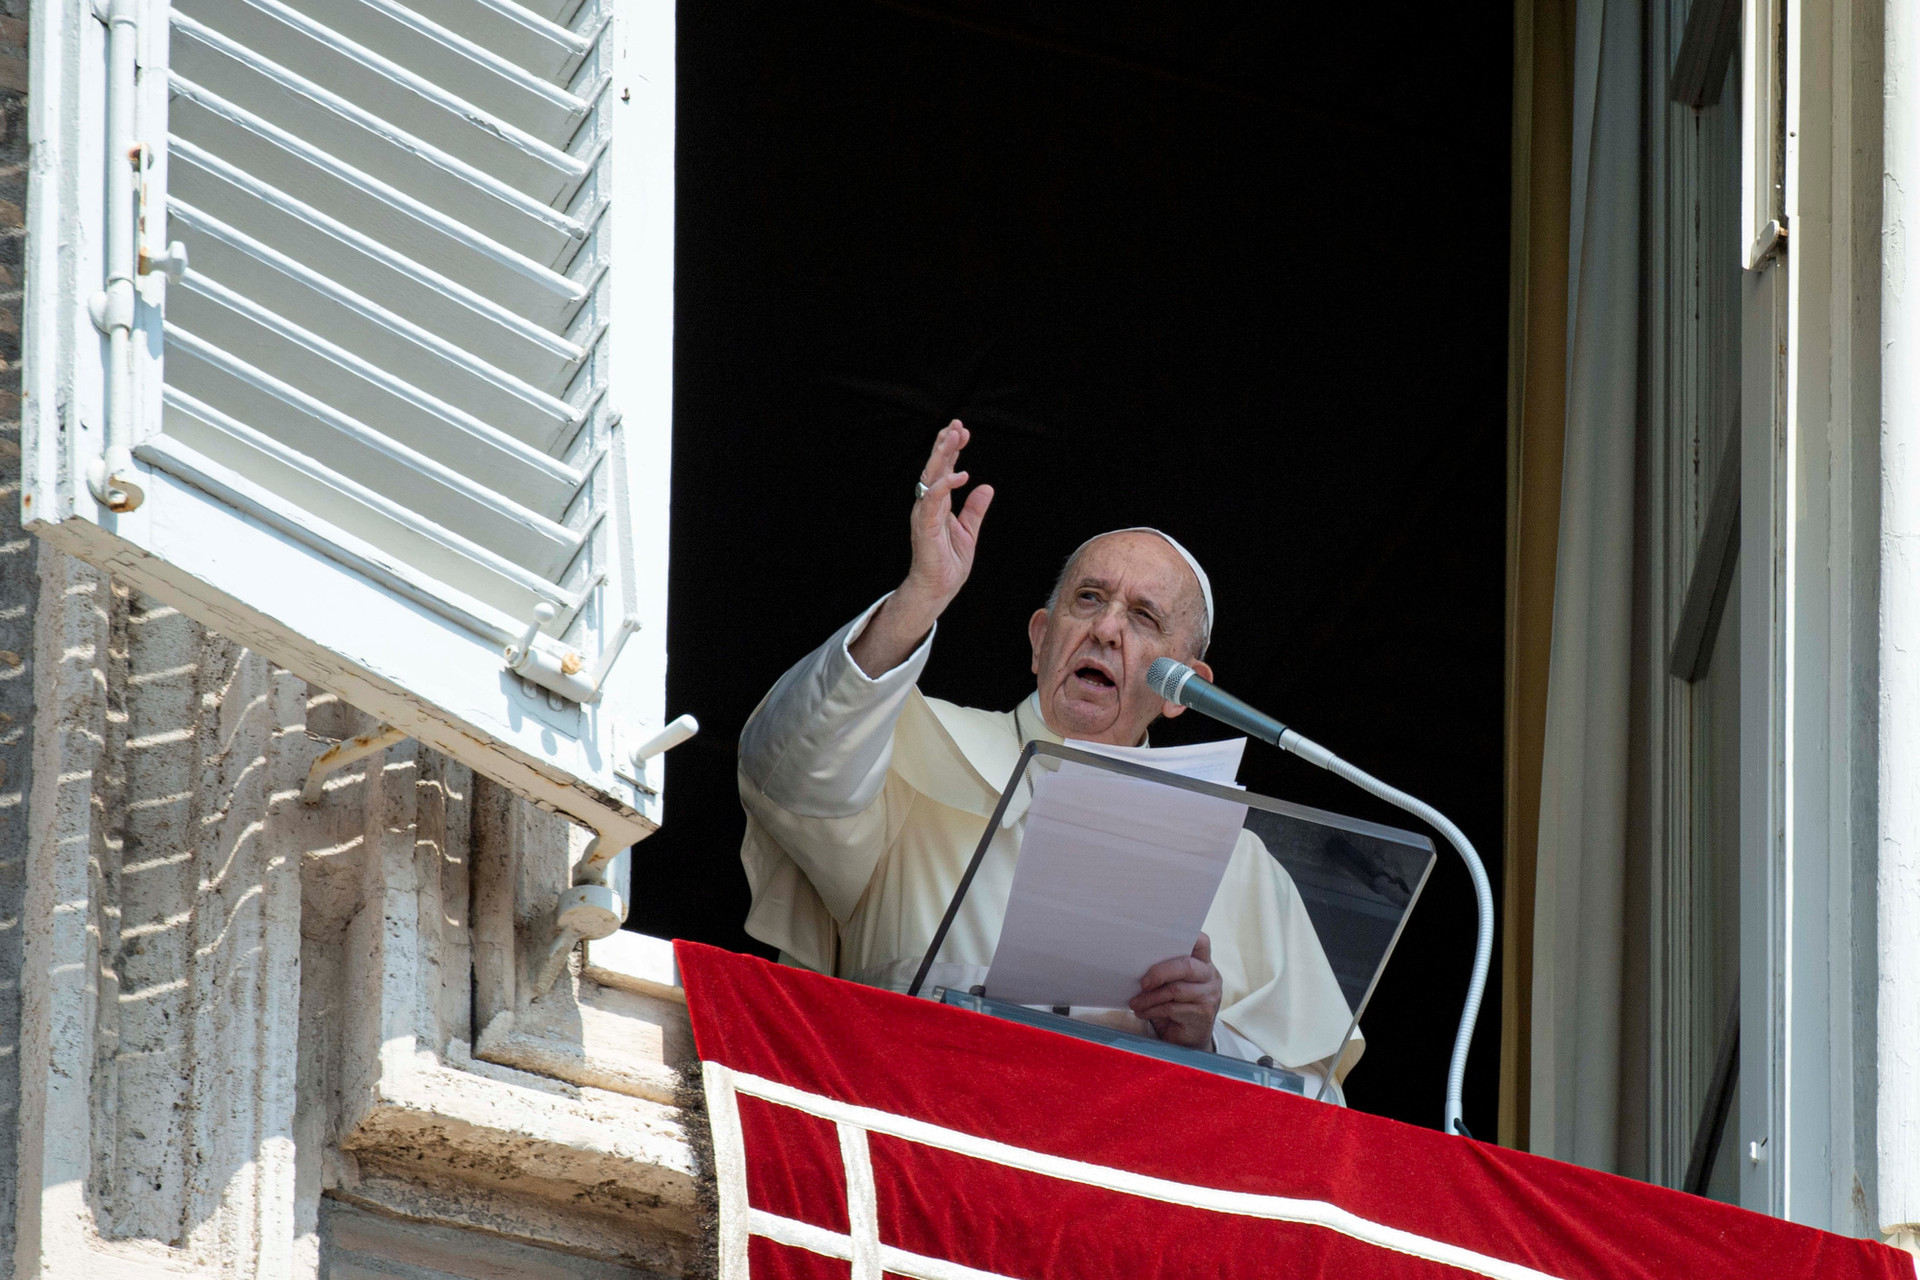 Đức Giáo hoàng Francis hỗ trợ khẩn cấp Việt Nam 100.000 euro - Ảnh 1.